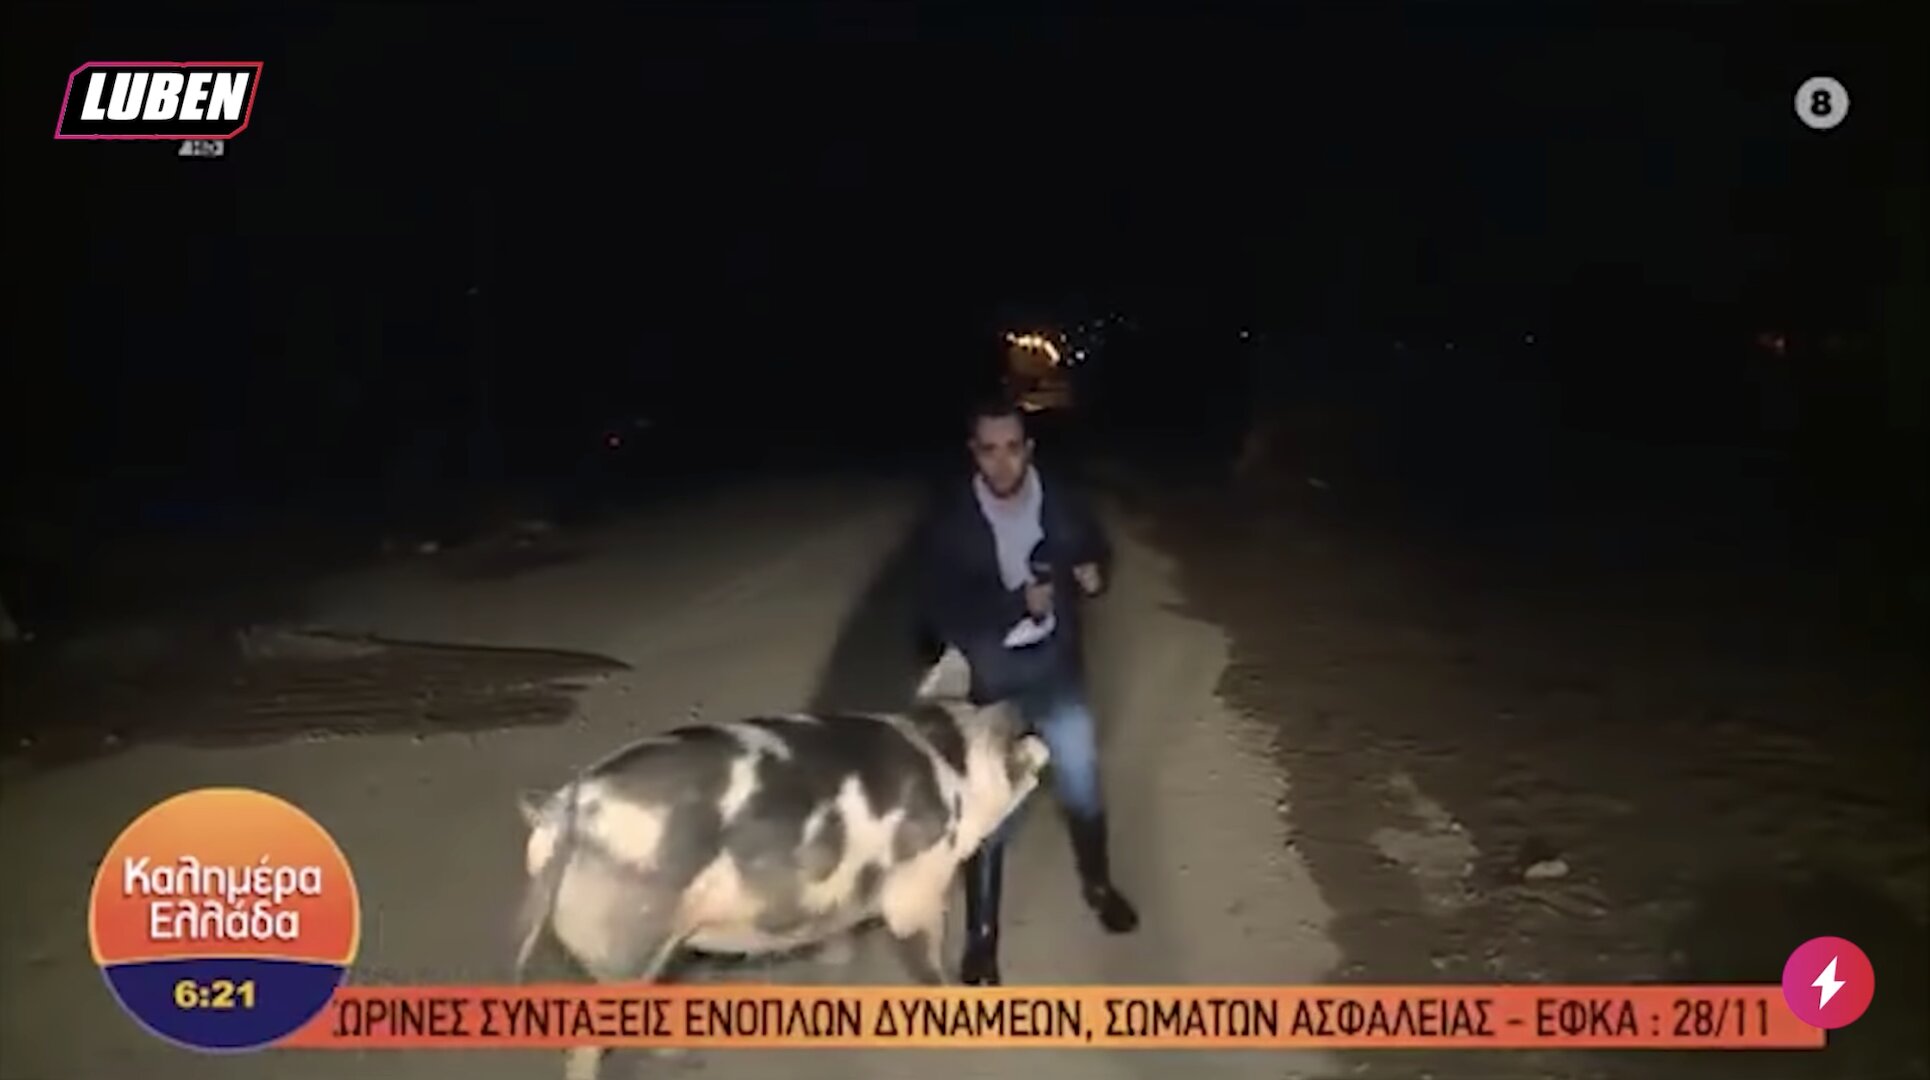 Γουρούνι την πέφτει live σε ρεπόρτερ του ΑΝΤ1 και τον δαγκώνει | Luben TV